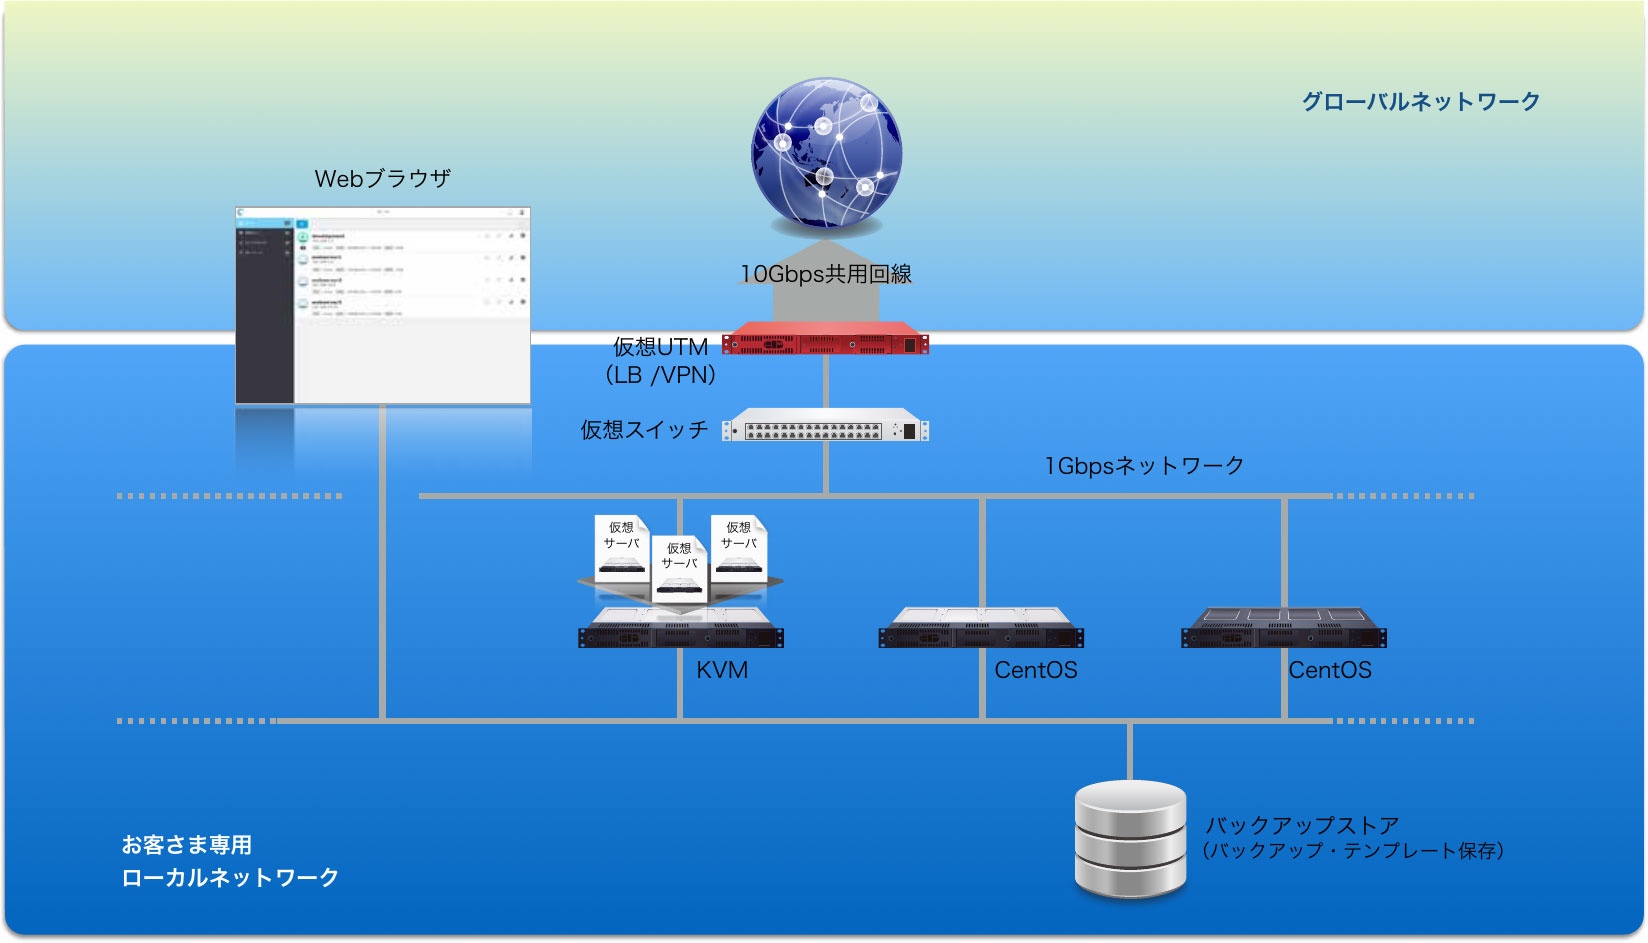 ベアメタル型アプリプラットフォームのネットワーク構成（資料提供：リンク）